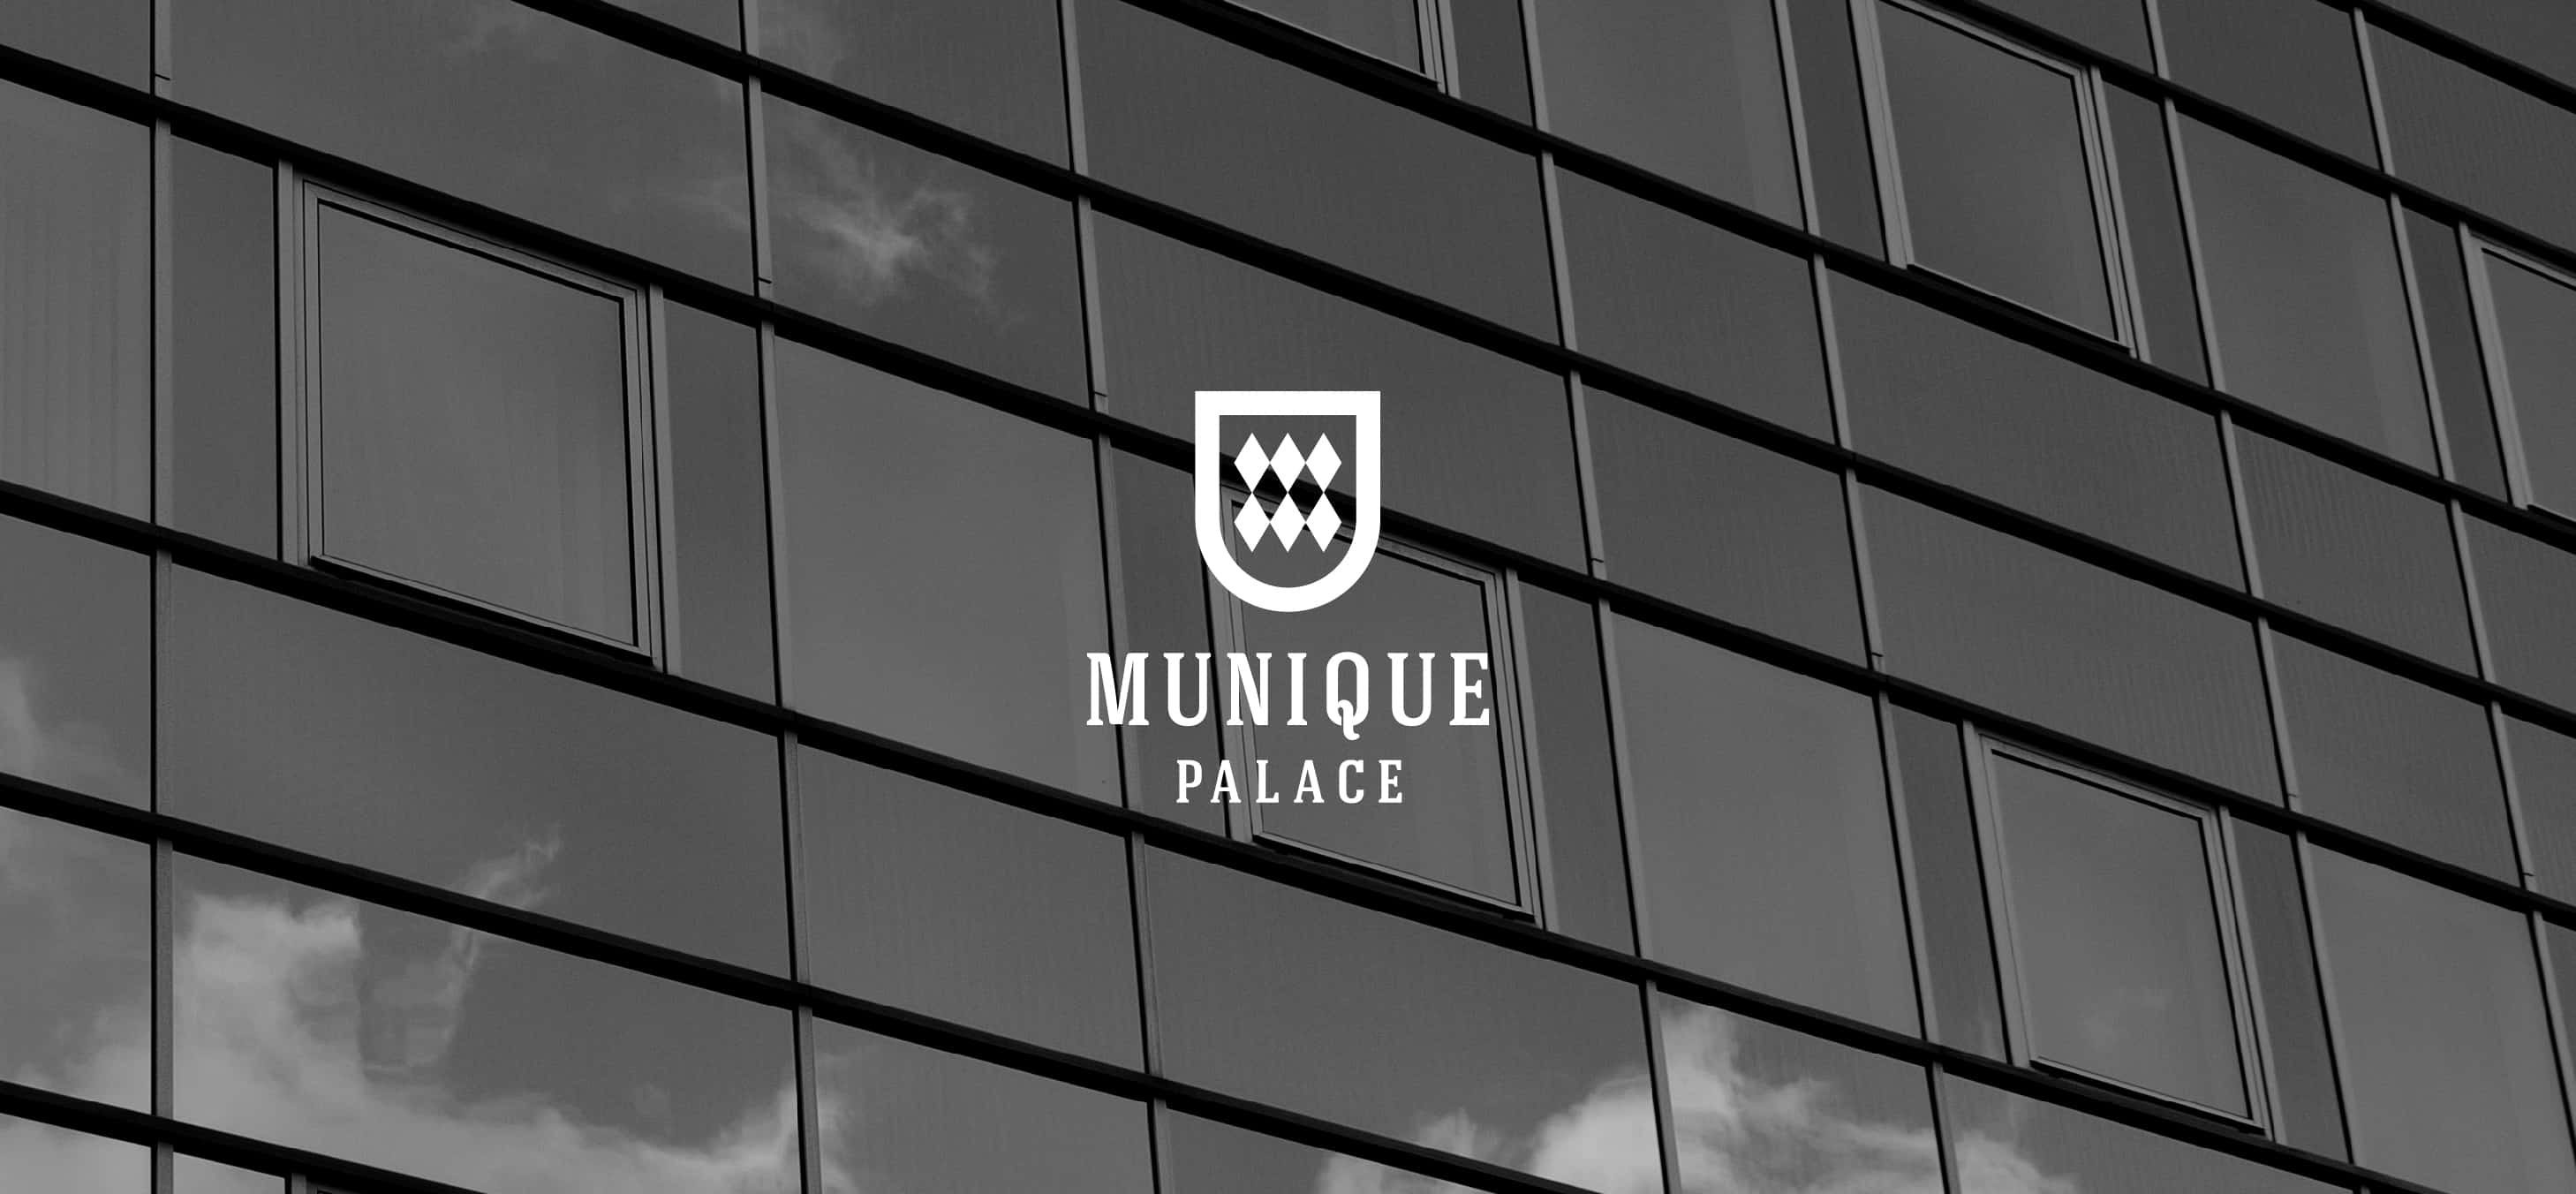 Munique Palace